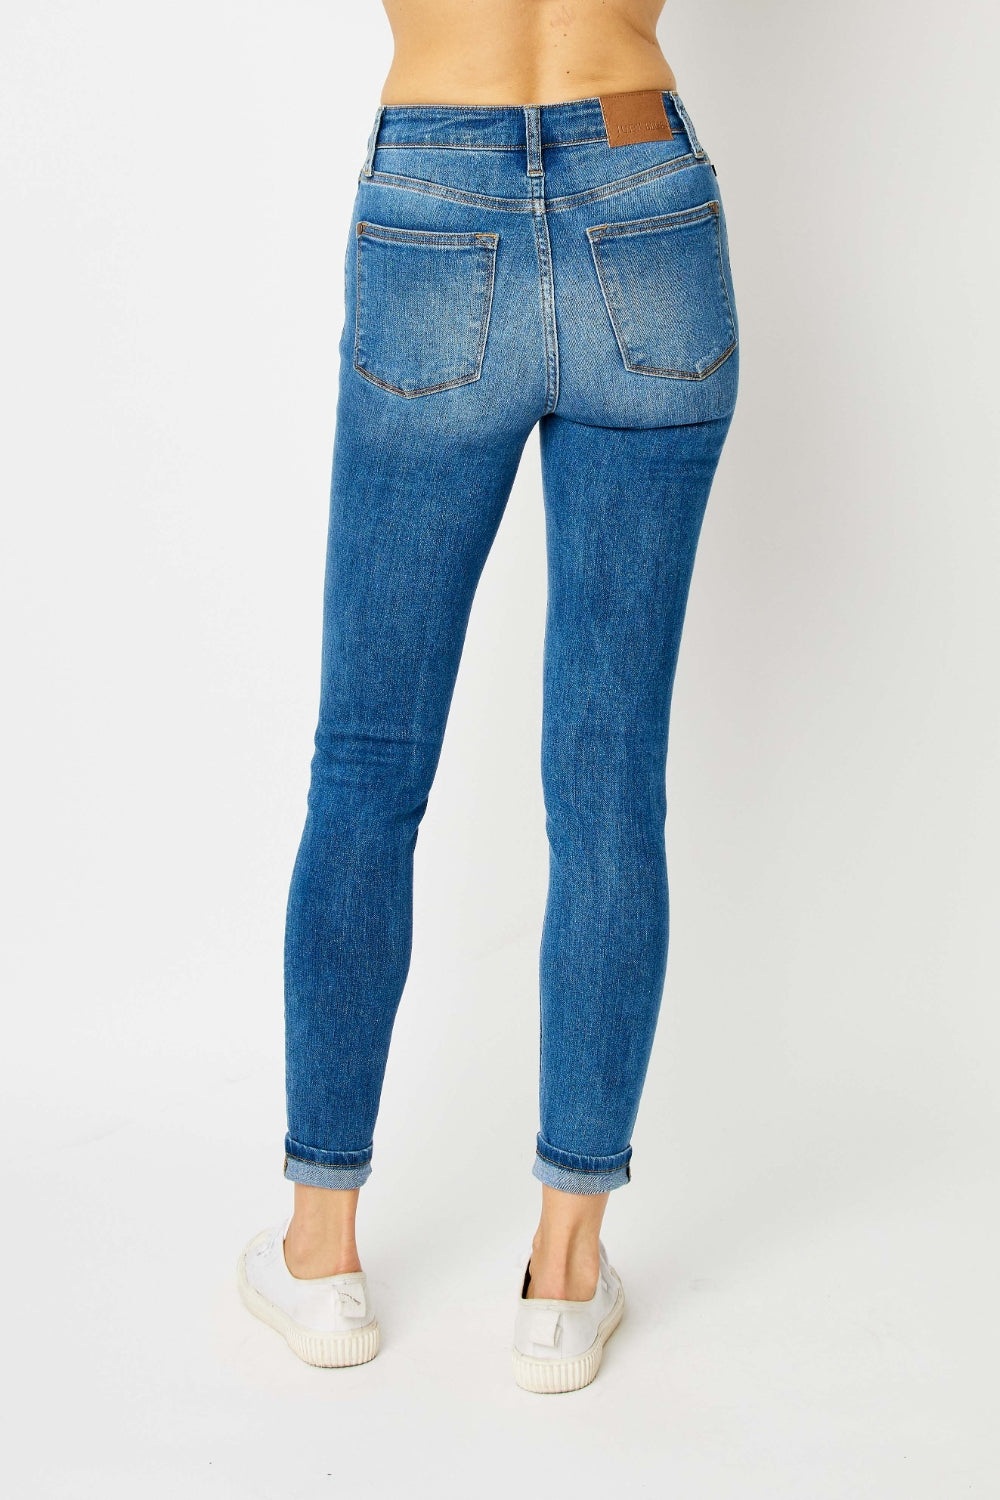 Judy Blue Cuffed Hem Skinny Jeans-Trendsi-[option4]-[option5]-[option6]-[option7]-[option8]-Shop-Boutique-Clothing-for-Women-Online